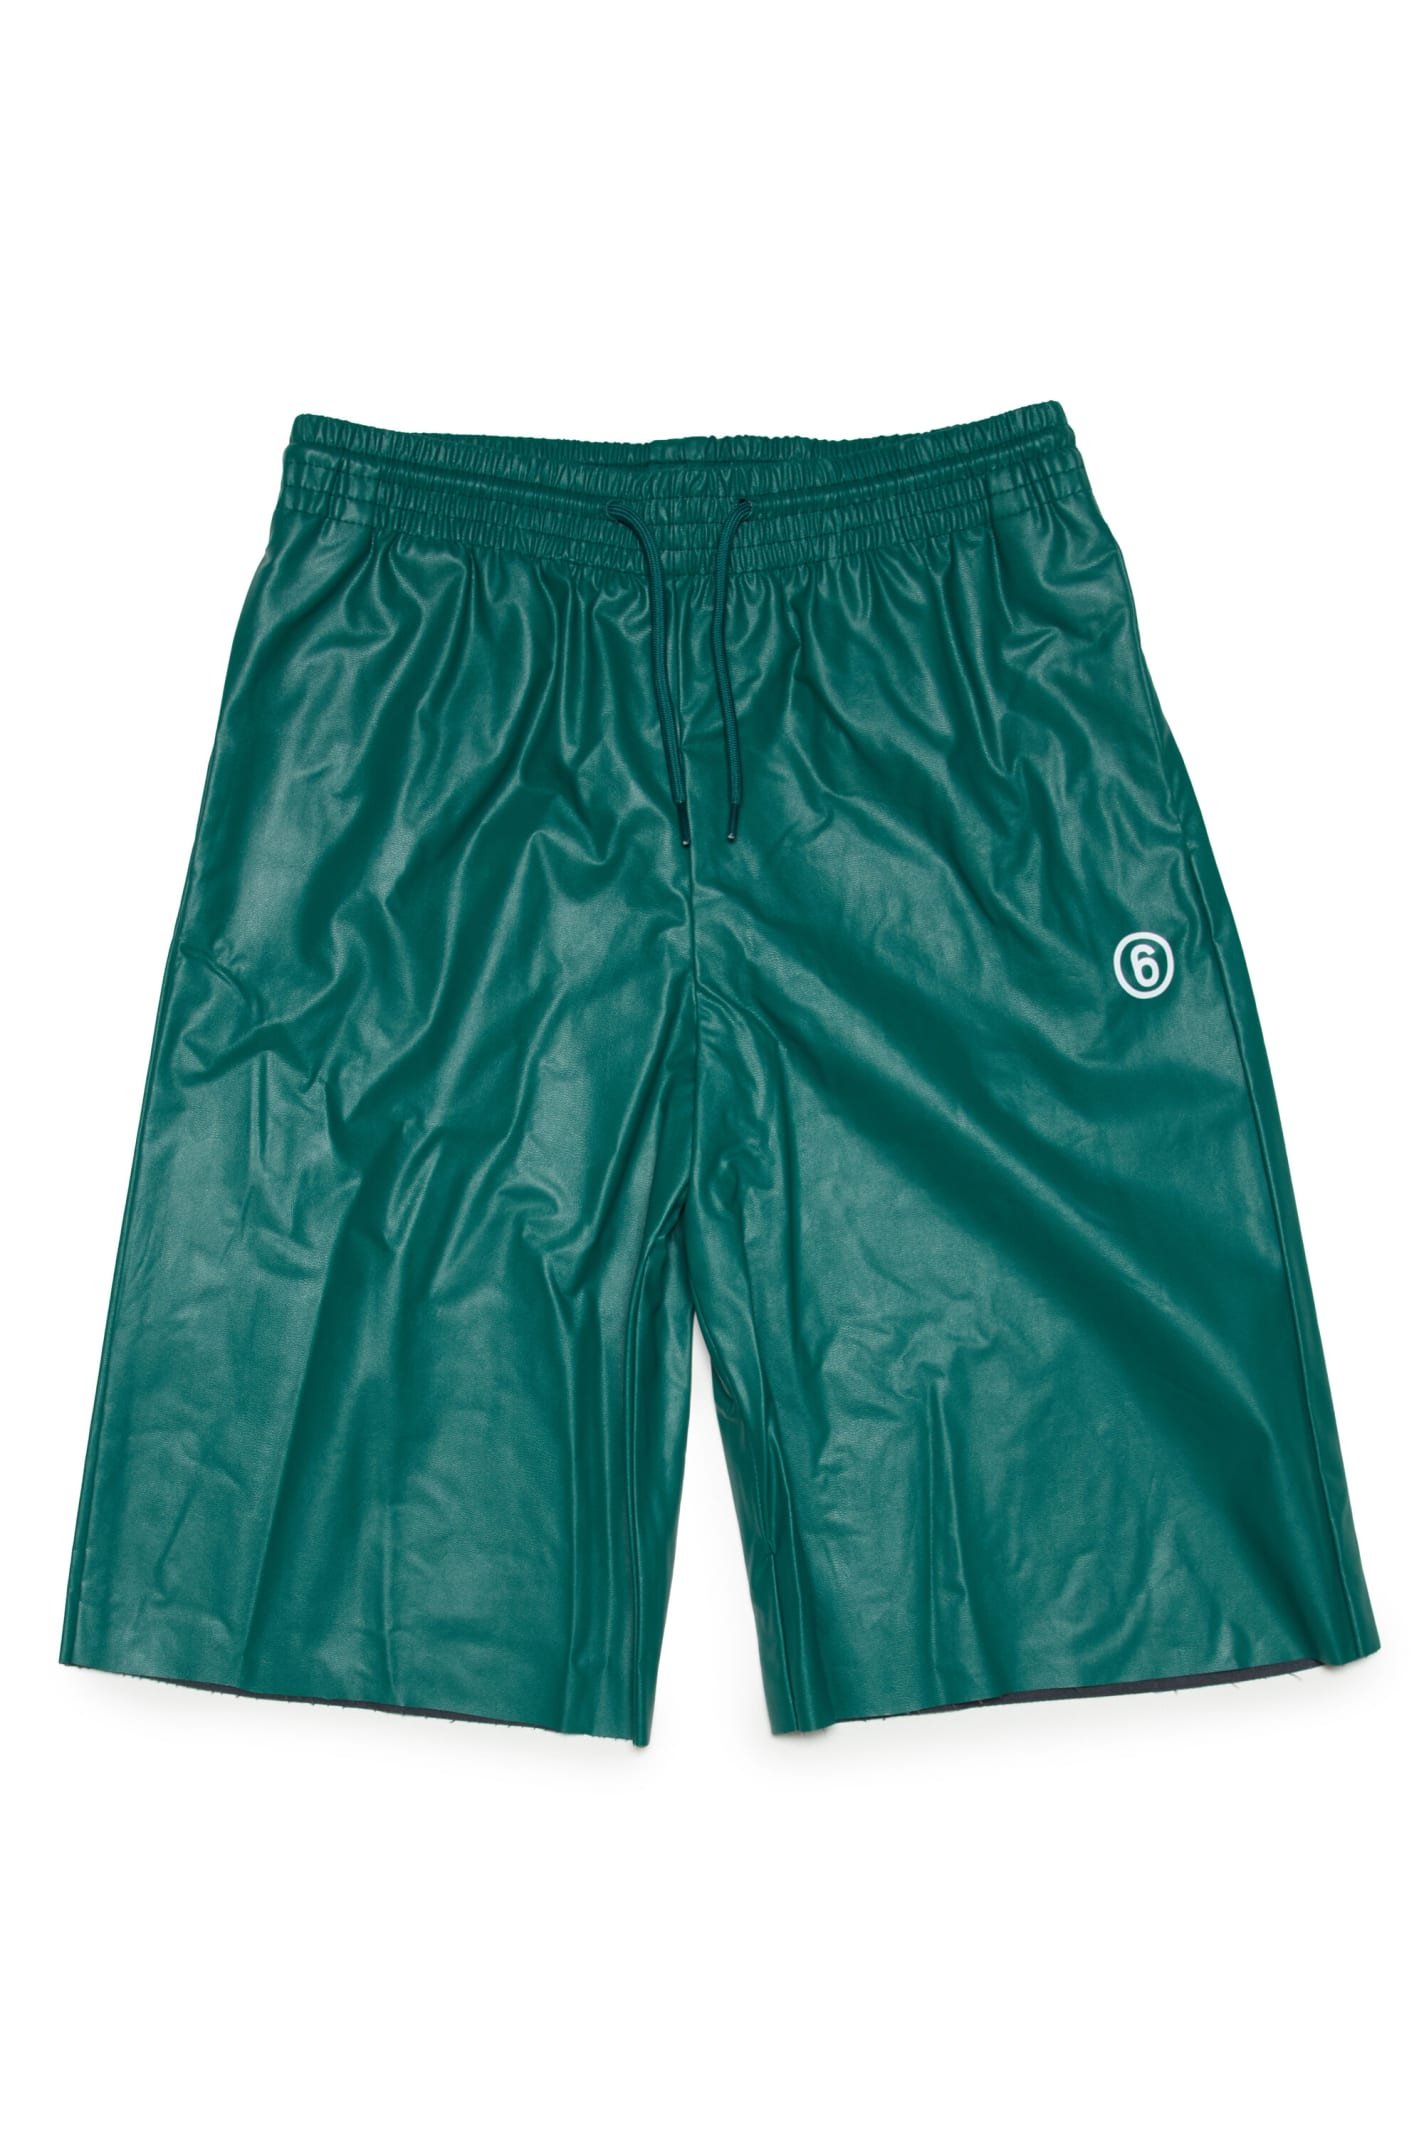 Mm6 Maison Margiela Kids' Green Fake Leather Shorts With Logo